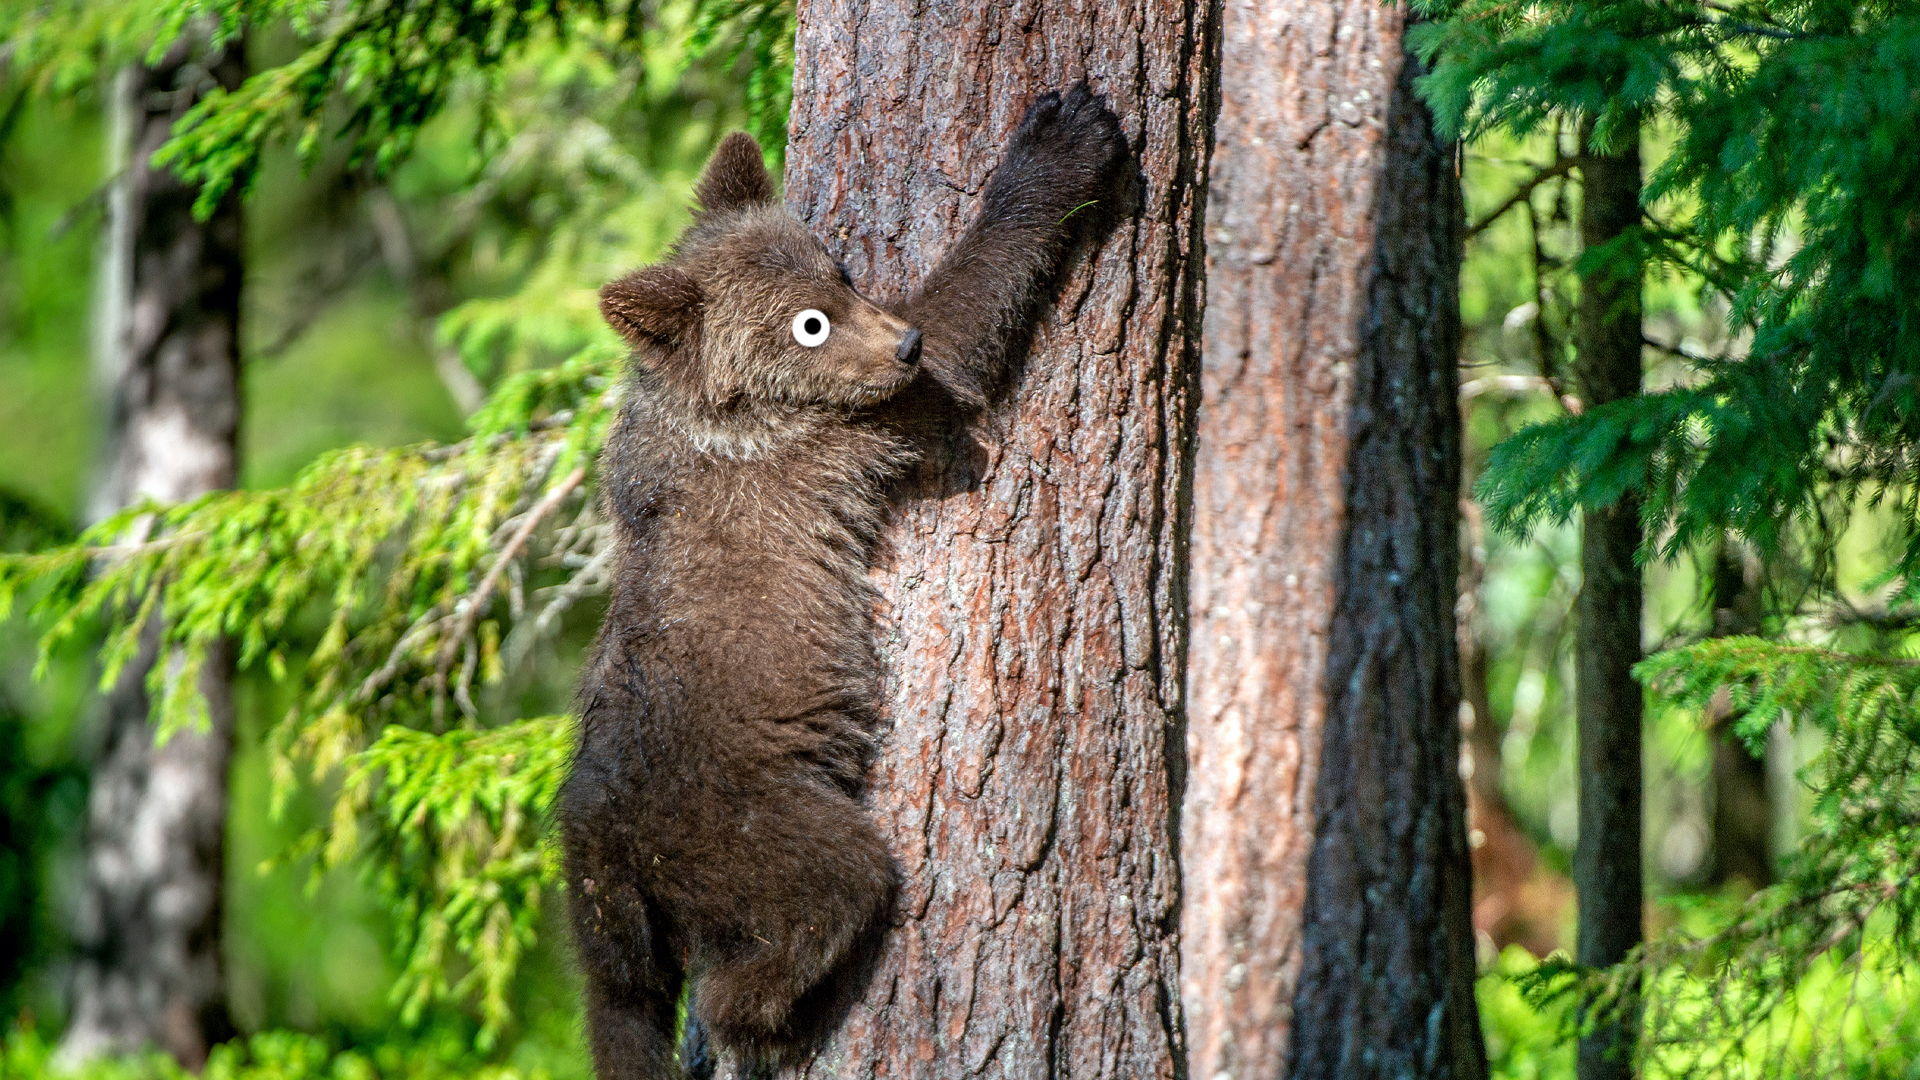 A bear climbing a tree